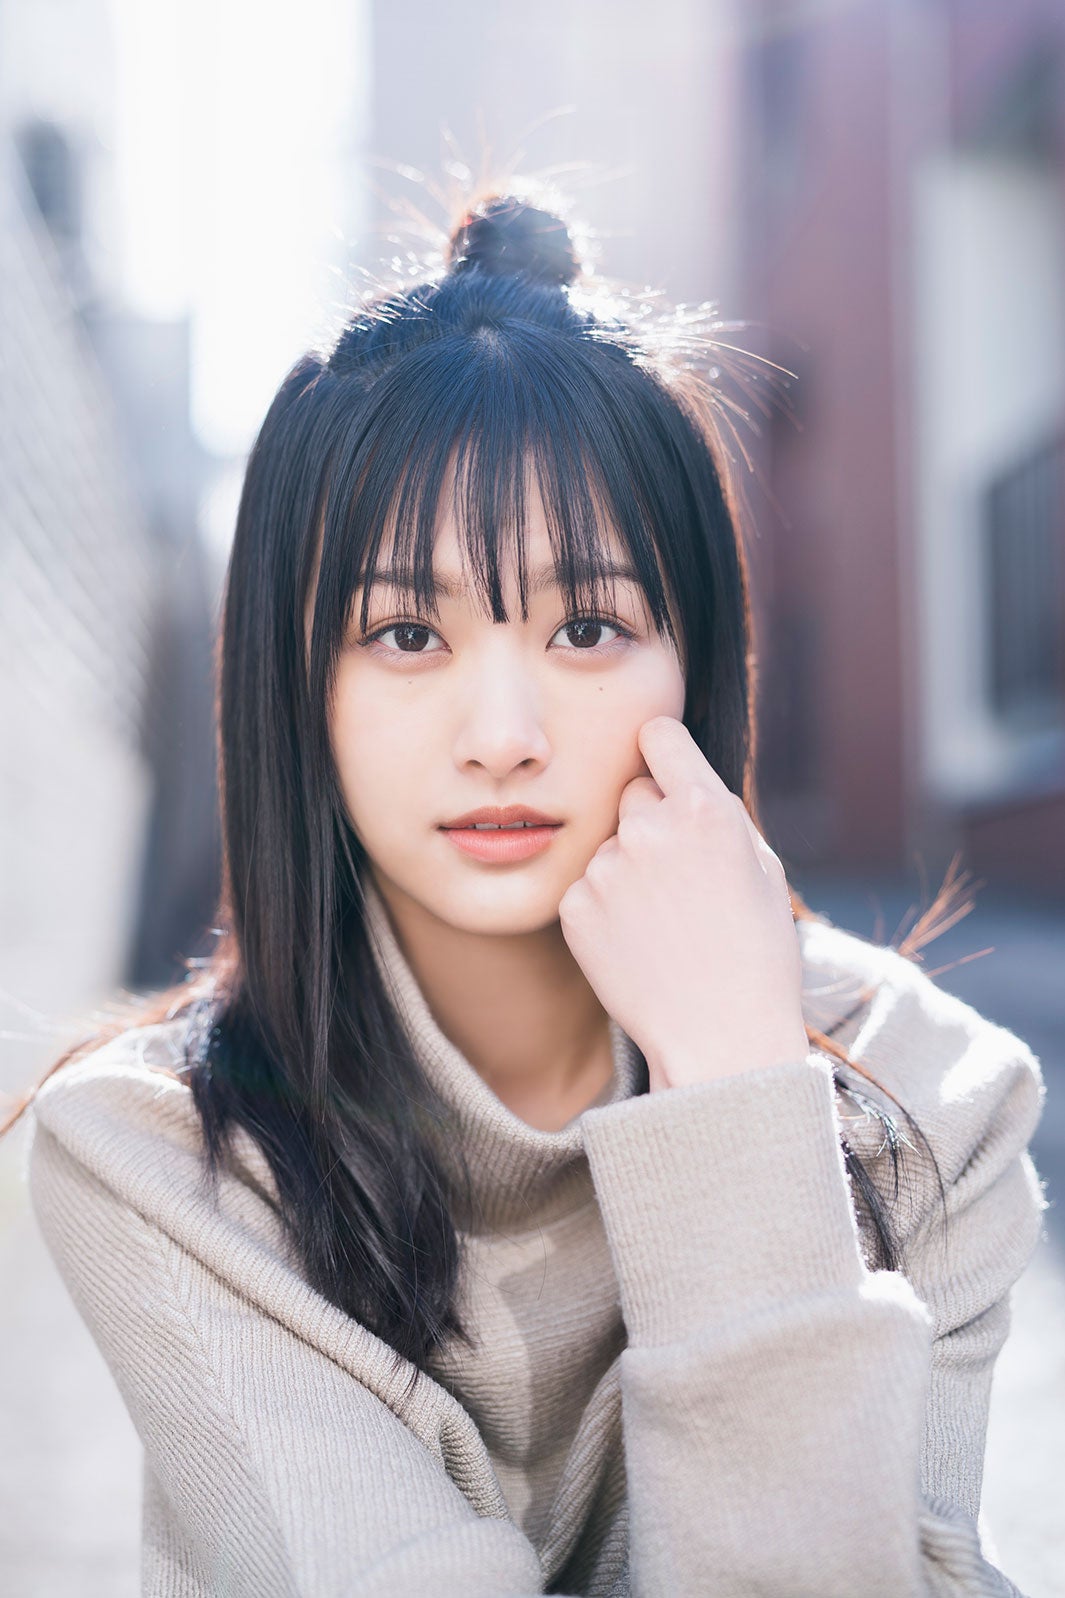 櫻坂46原田葵、癒やしの笑顔で魅了 - モデルプレス